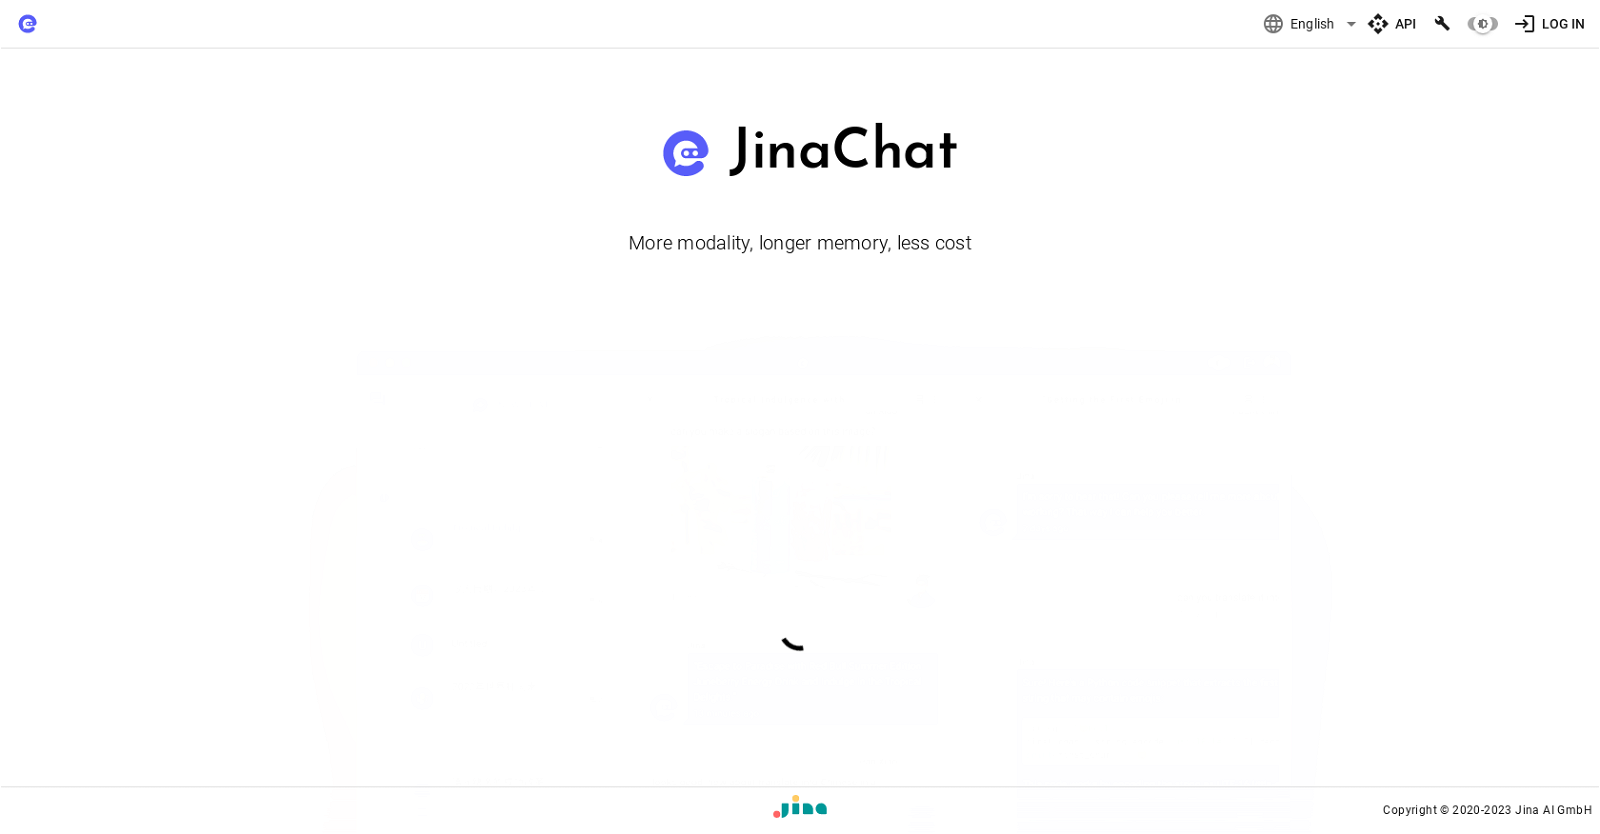 JinaChat website